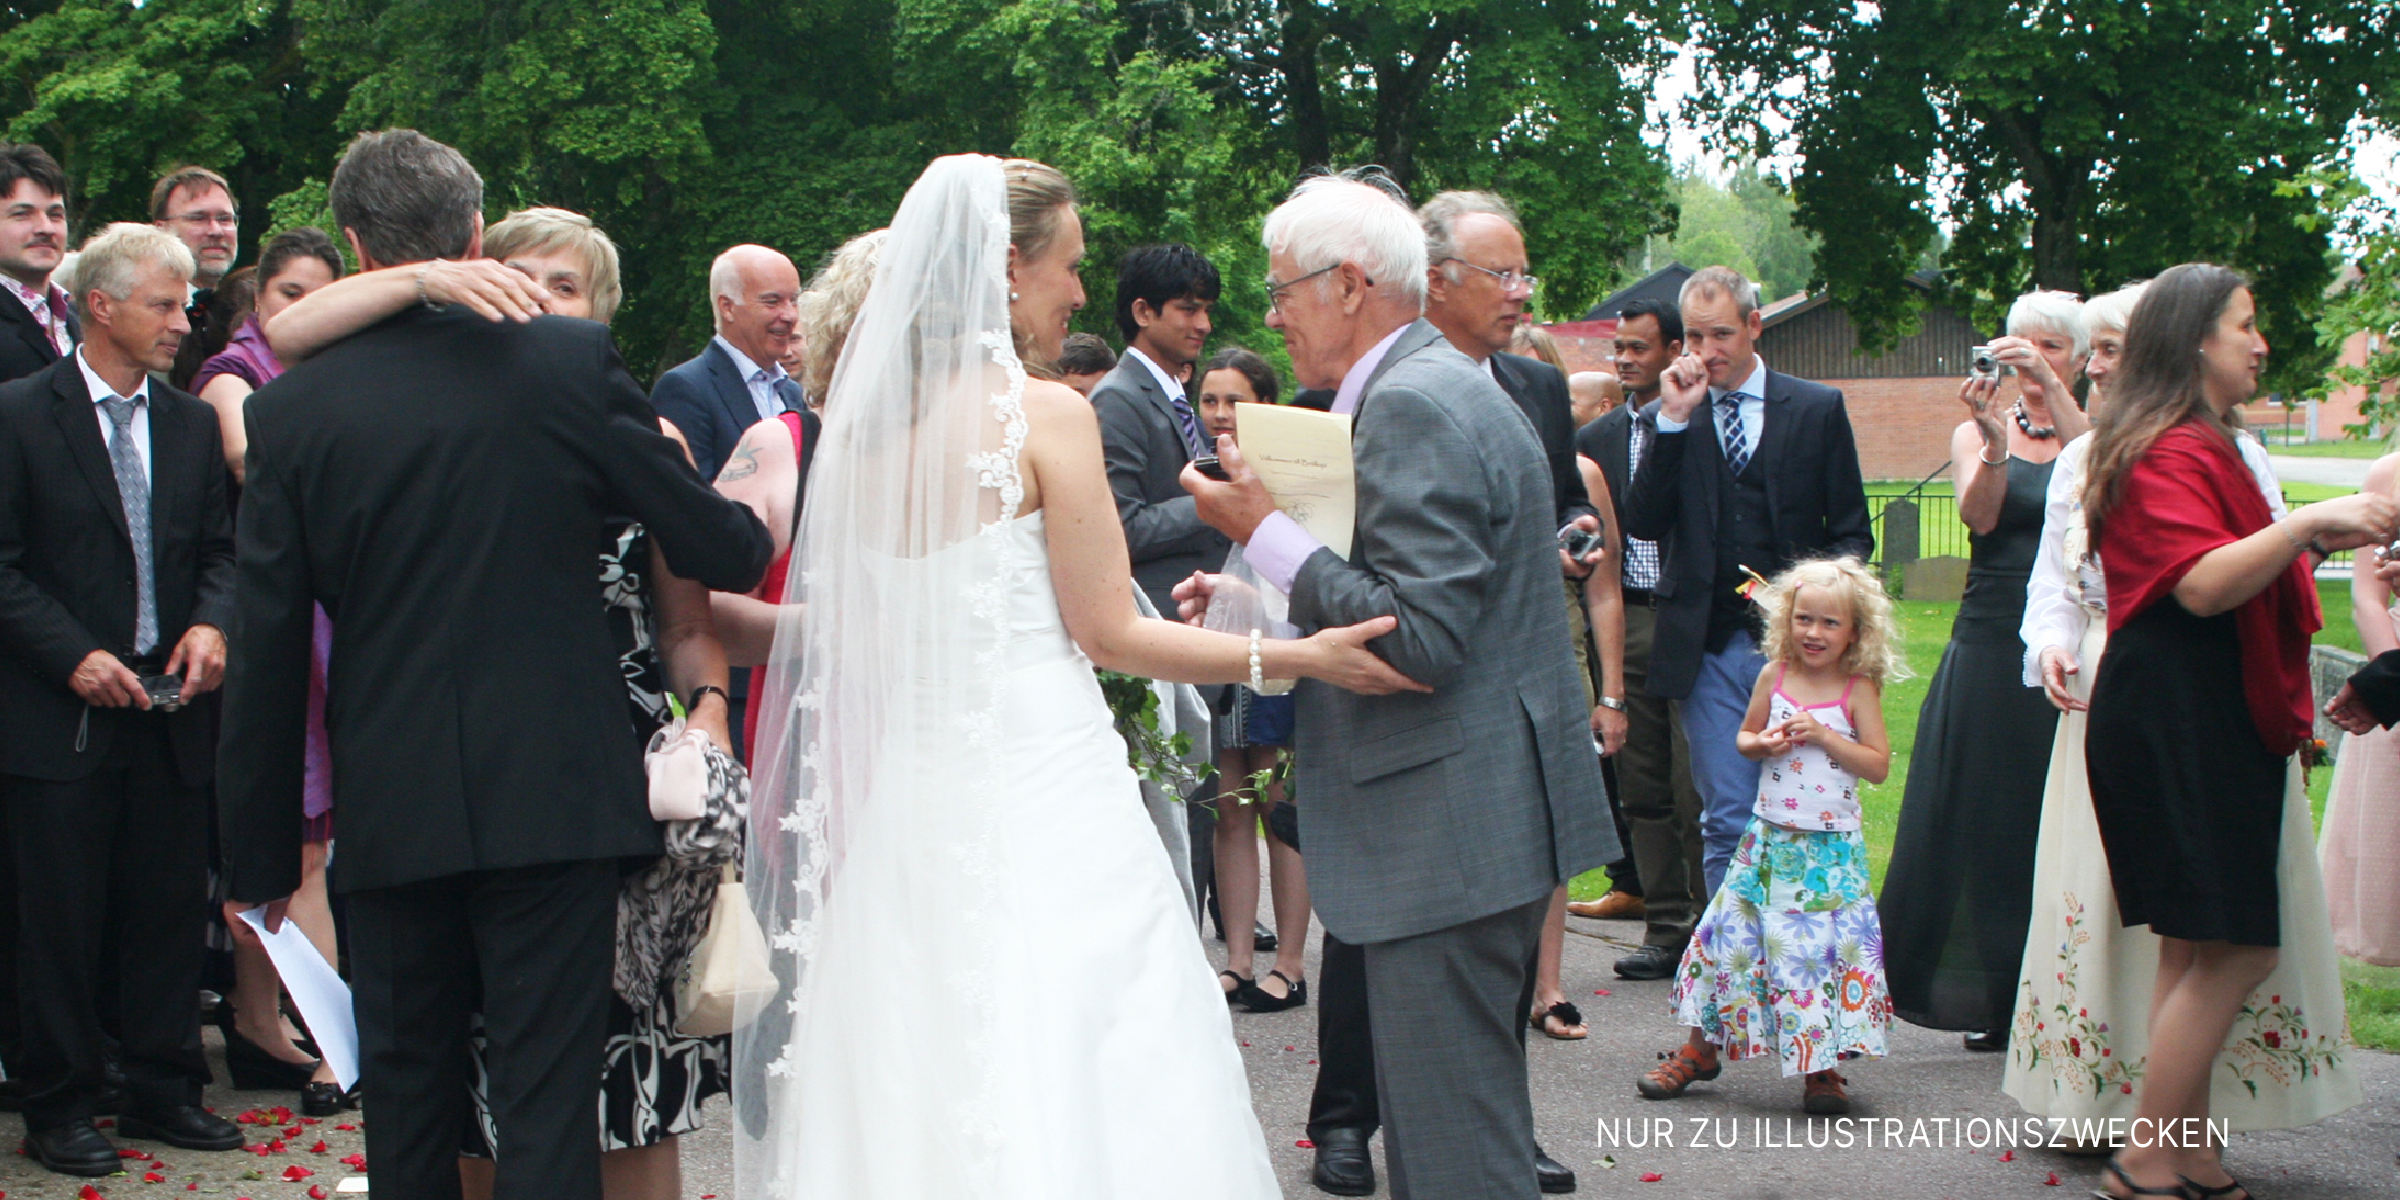 Hochzeitsgeste mit der Braut in der Mitte | Quelle: Flickr / sebilden (CC BY 2.0)